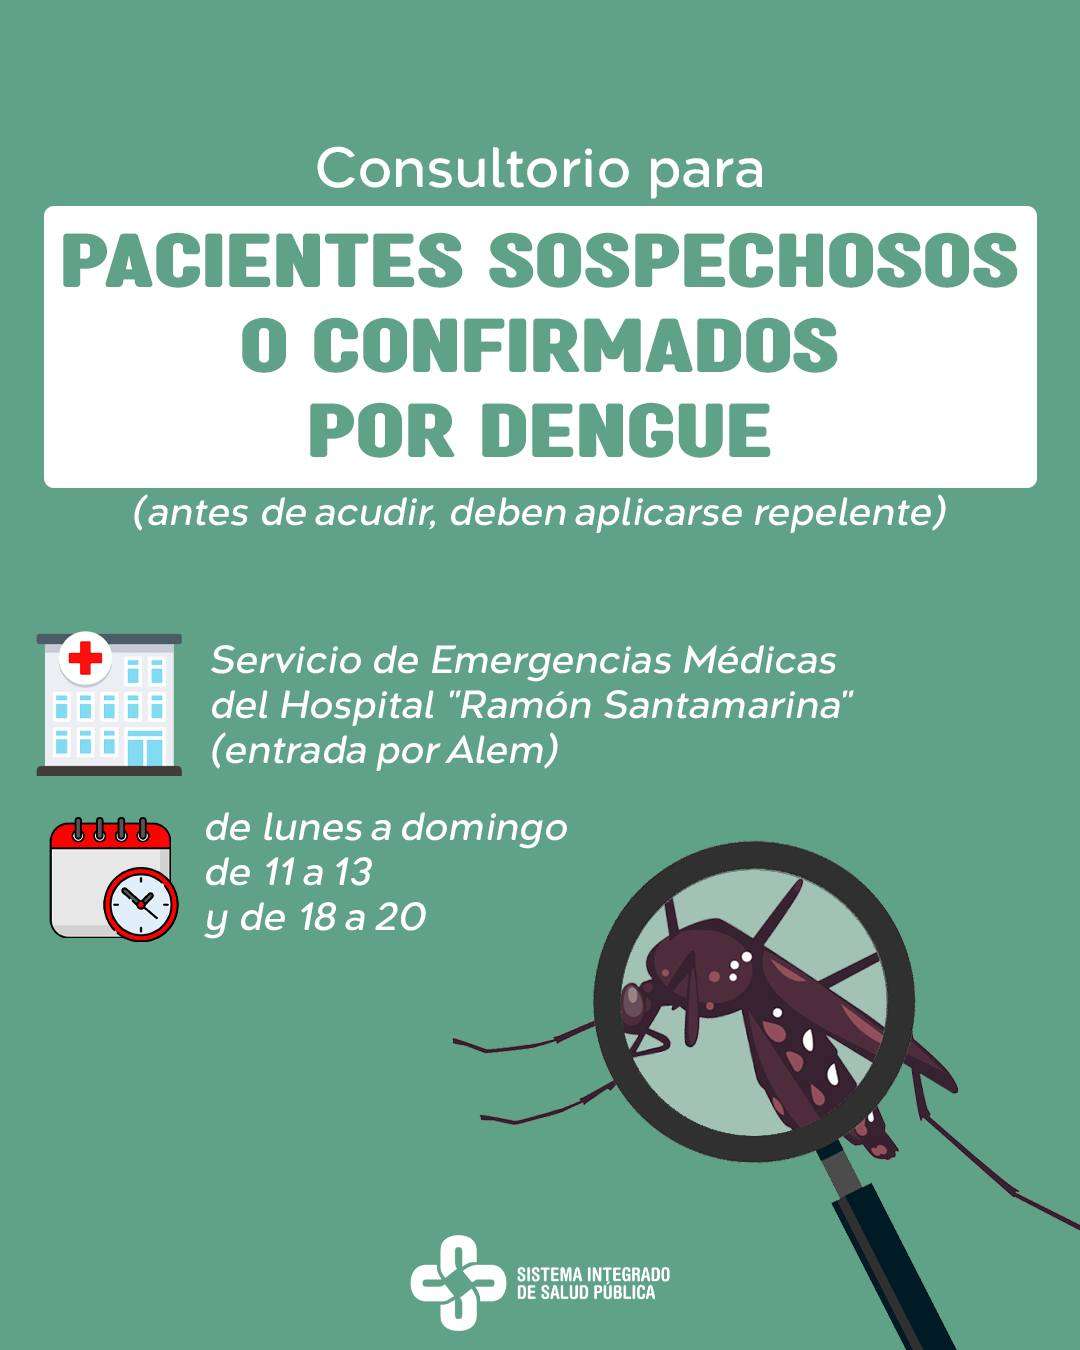 Consultorio dengue